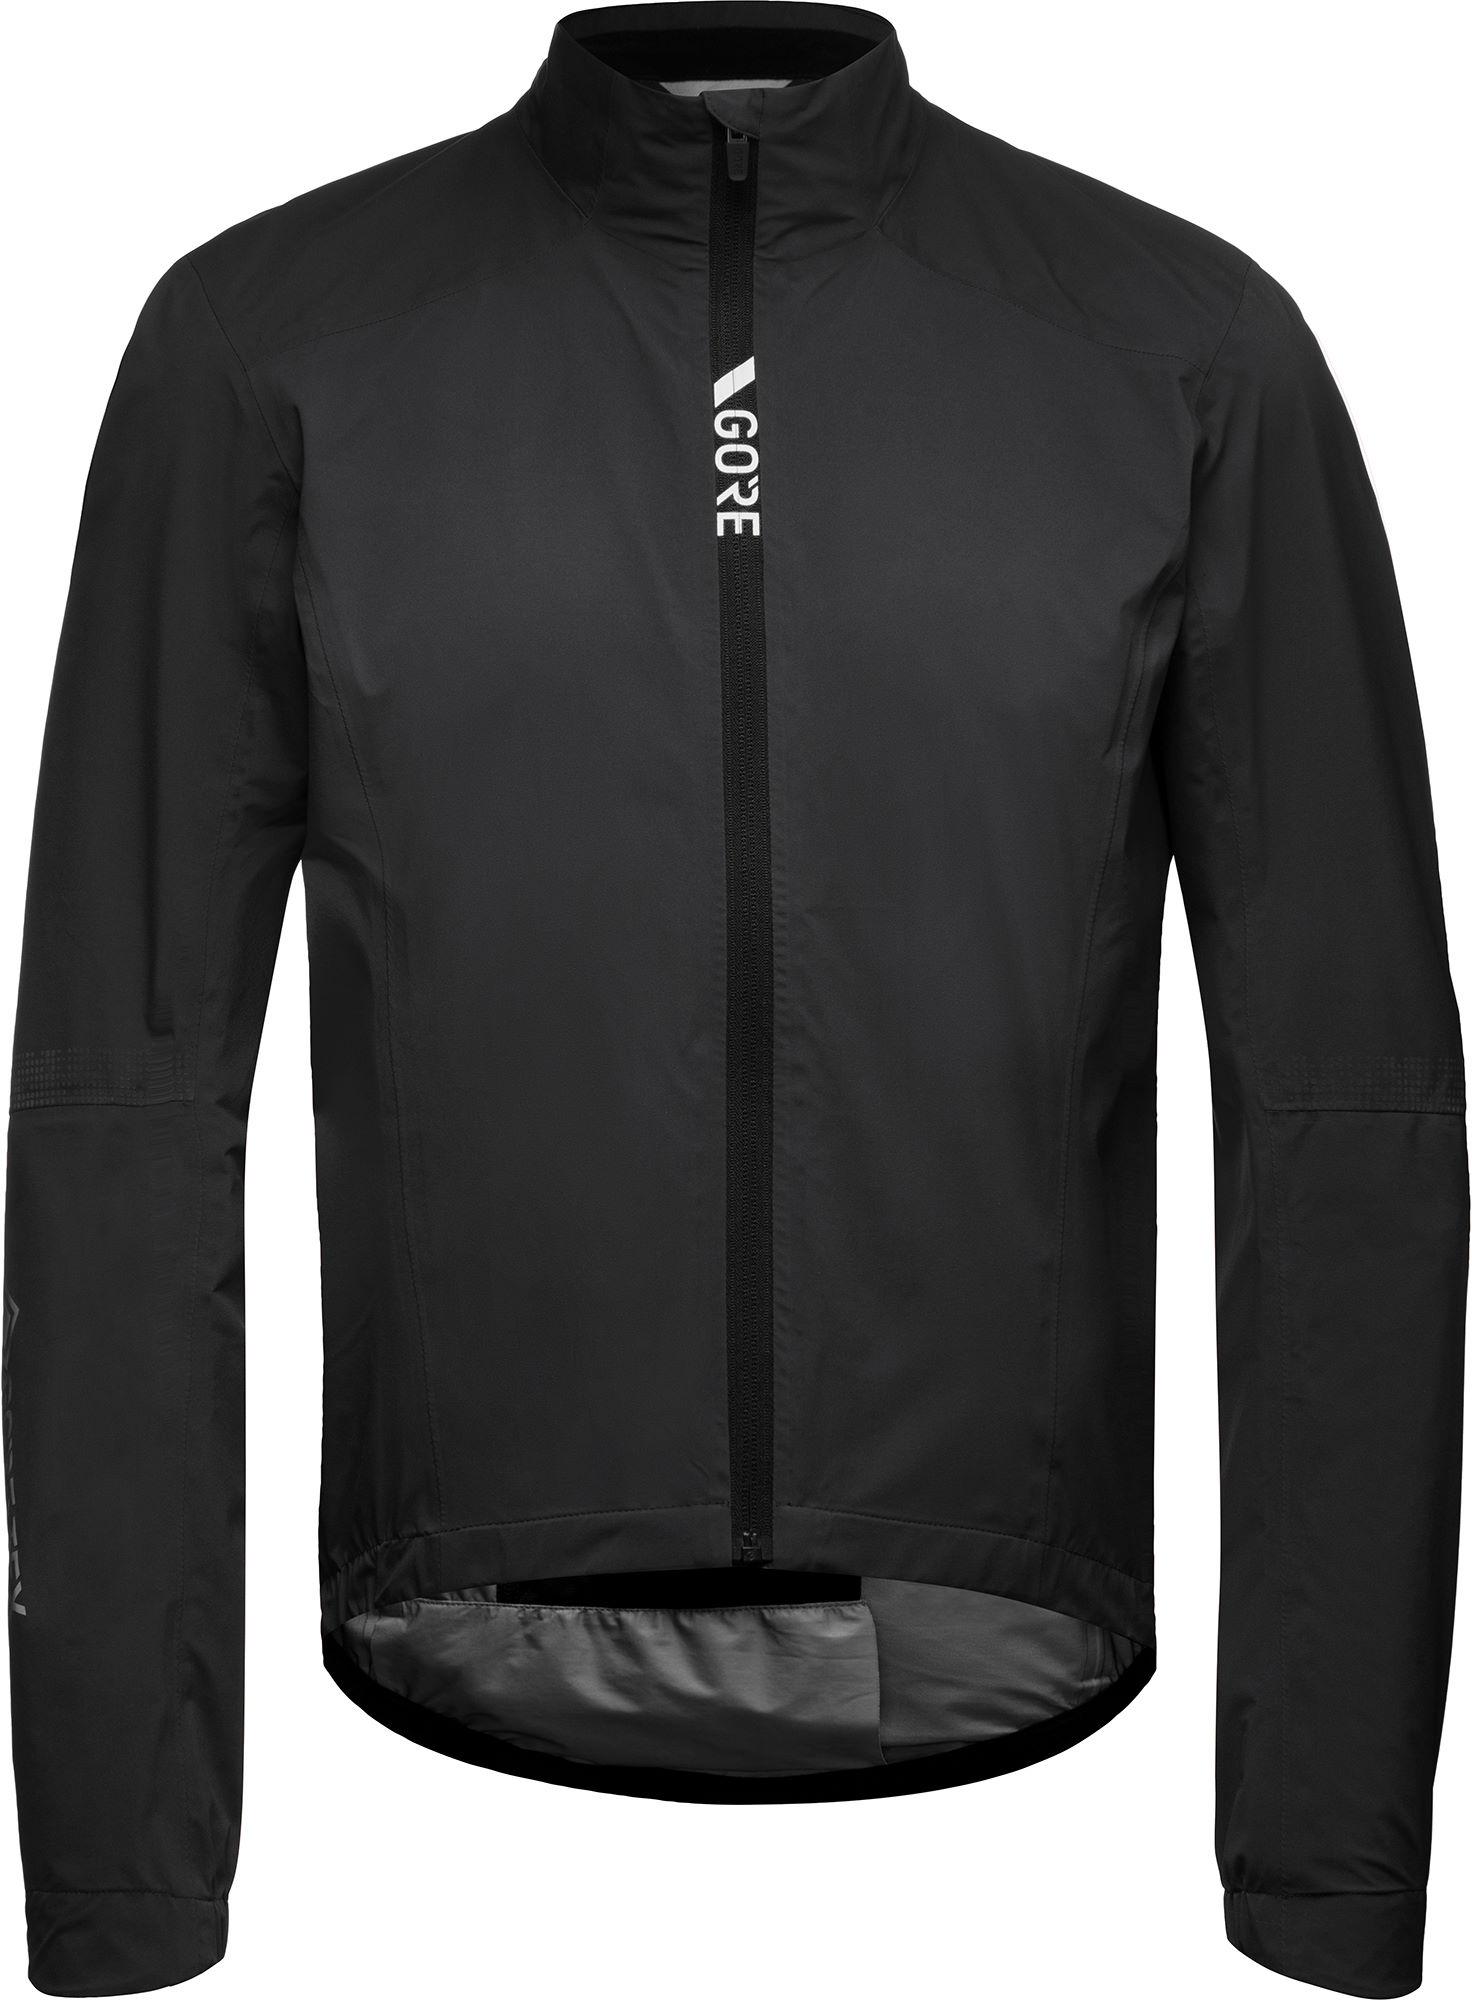 Gorewear Torrent Cycling Jacket  Black